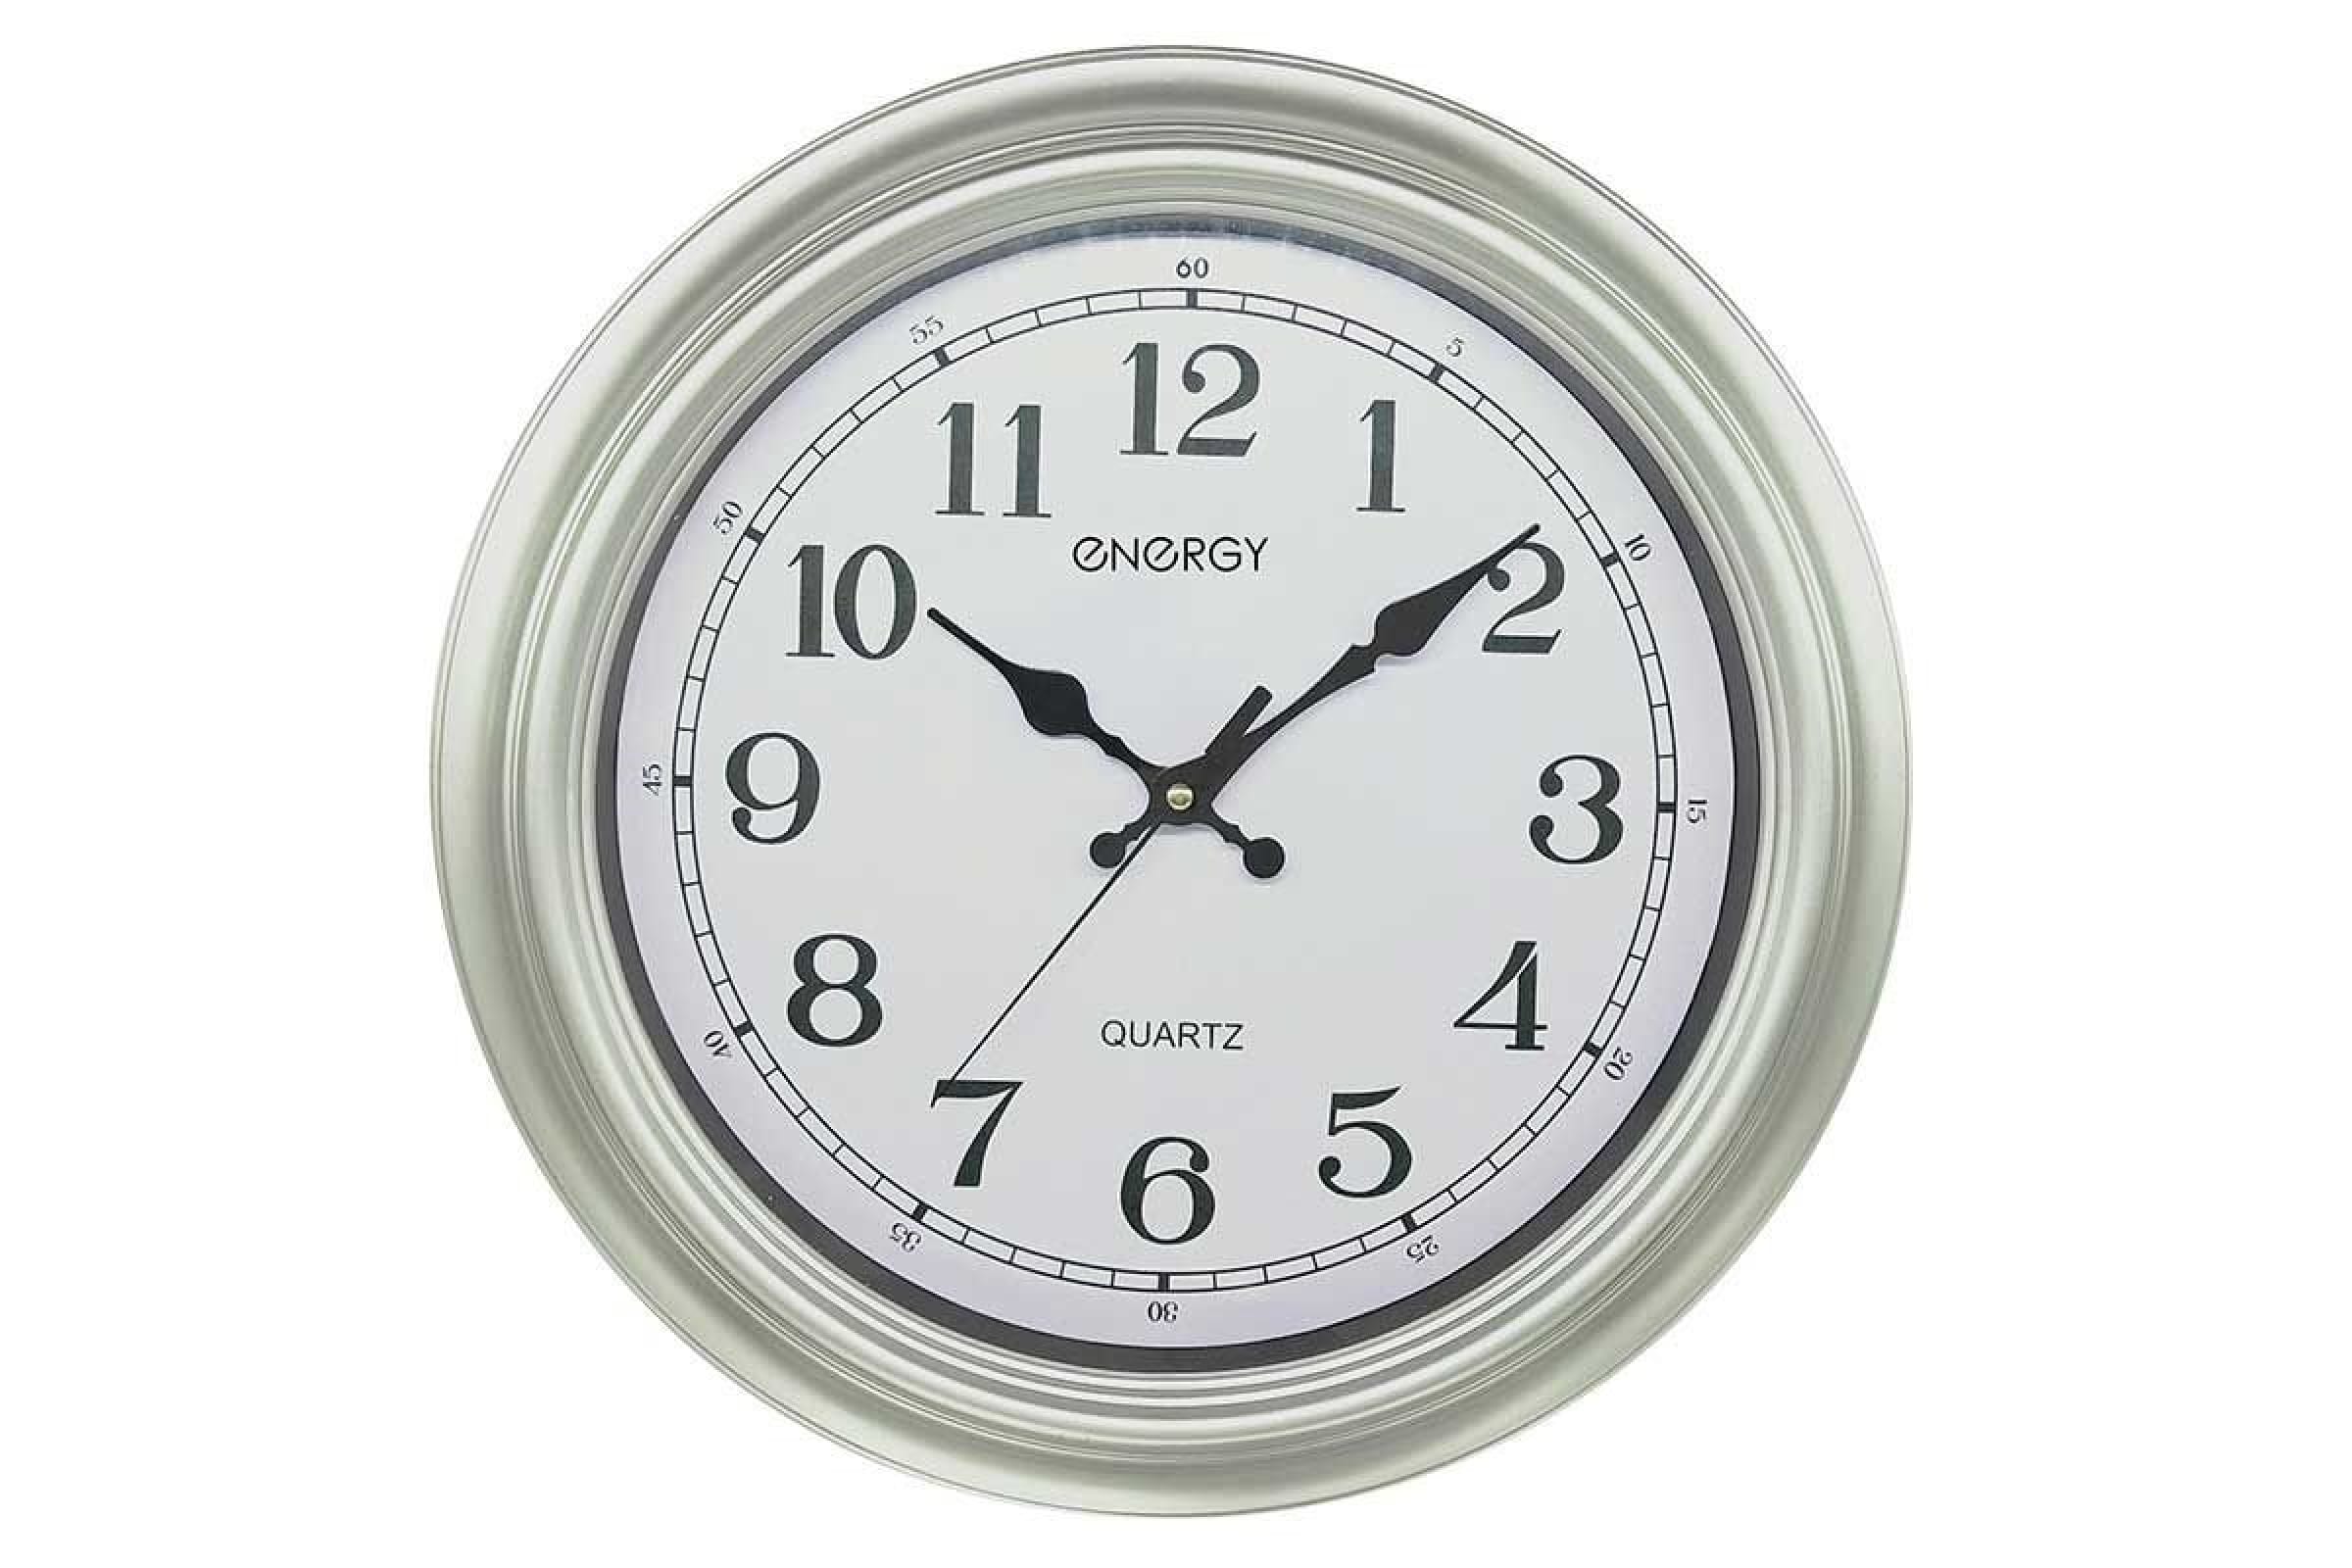 Настенные часы energy. Часы настенные кварцевые Engy модель ЕС-17 круглые. Часы настенные кварцевые Engy модель ЕС-20 квадратные. Часы Energy ЕС-01. Часы настенные кварцевые Energy ЕС-97.